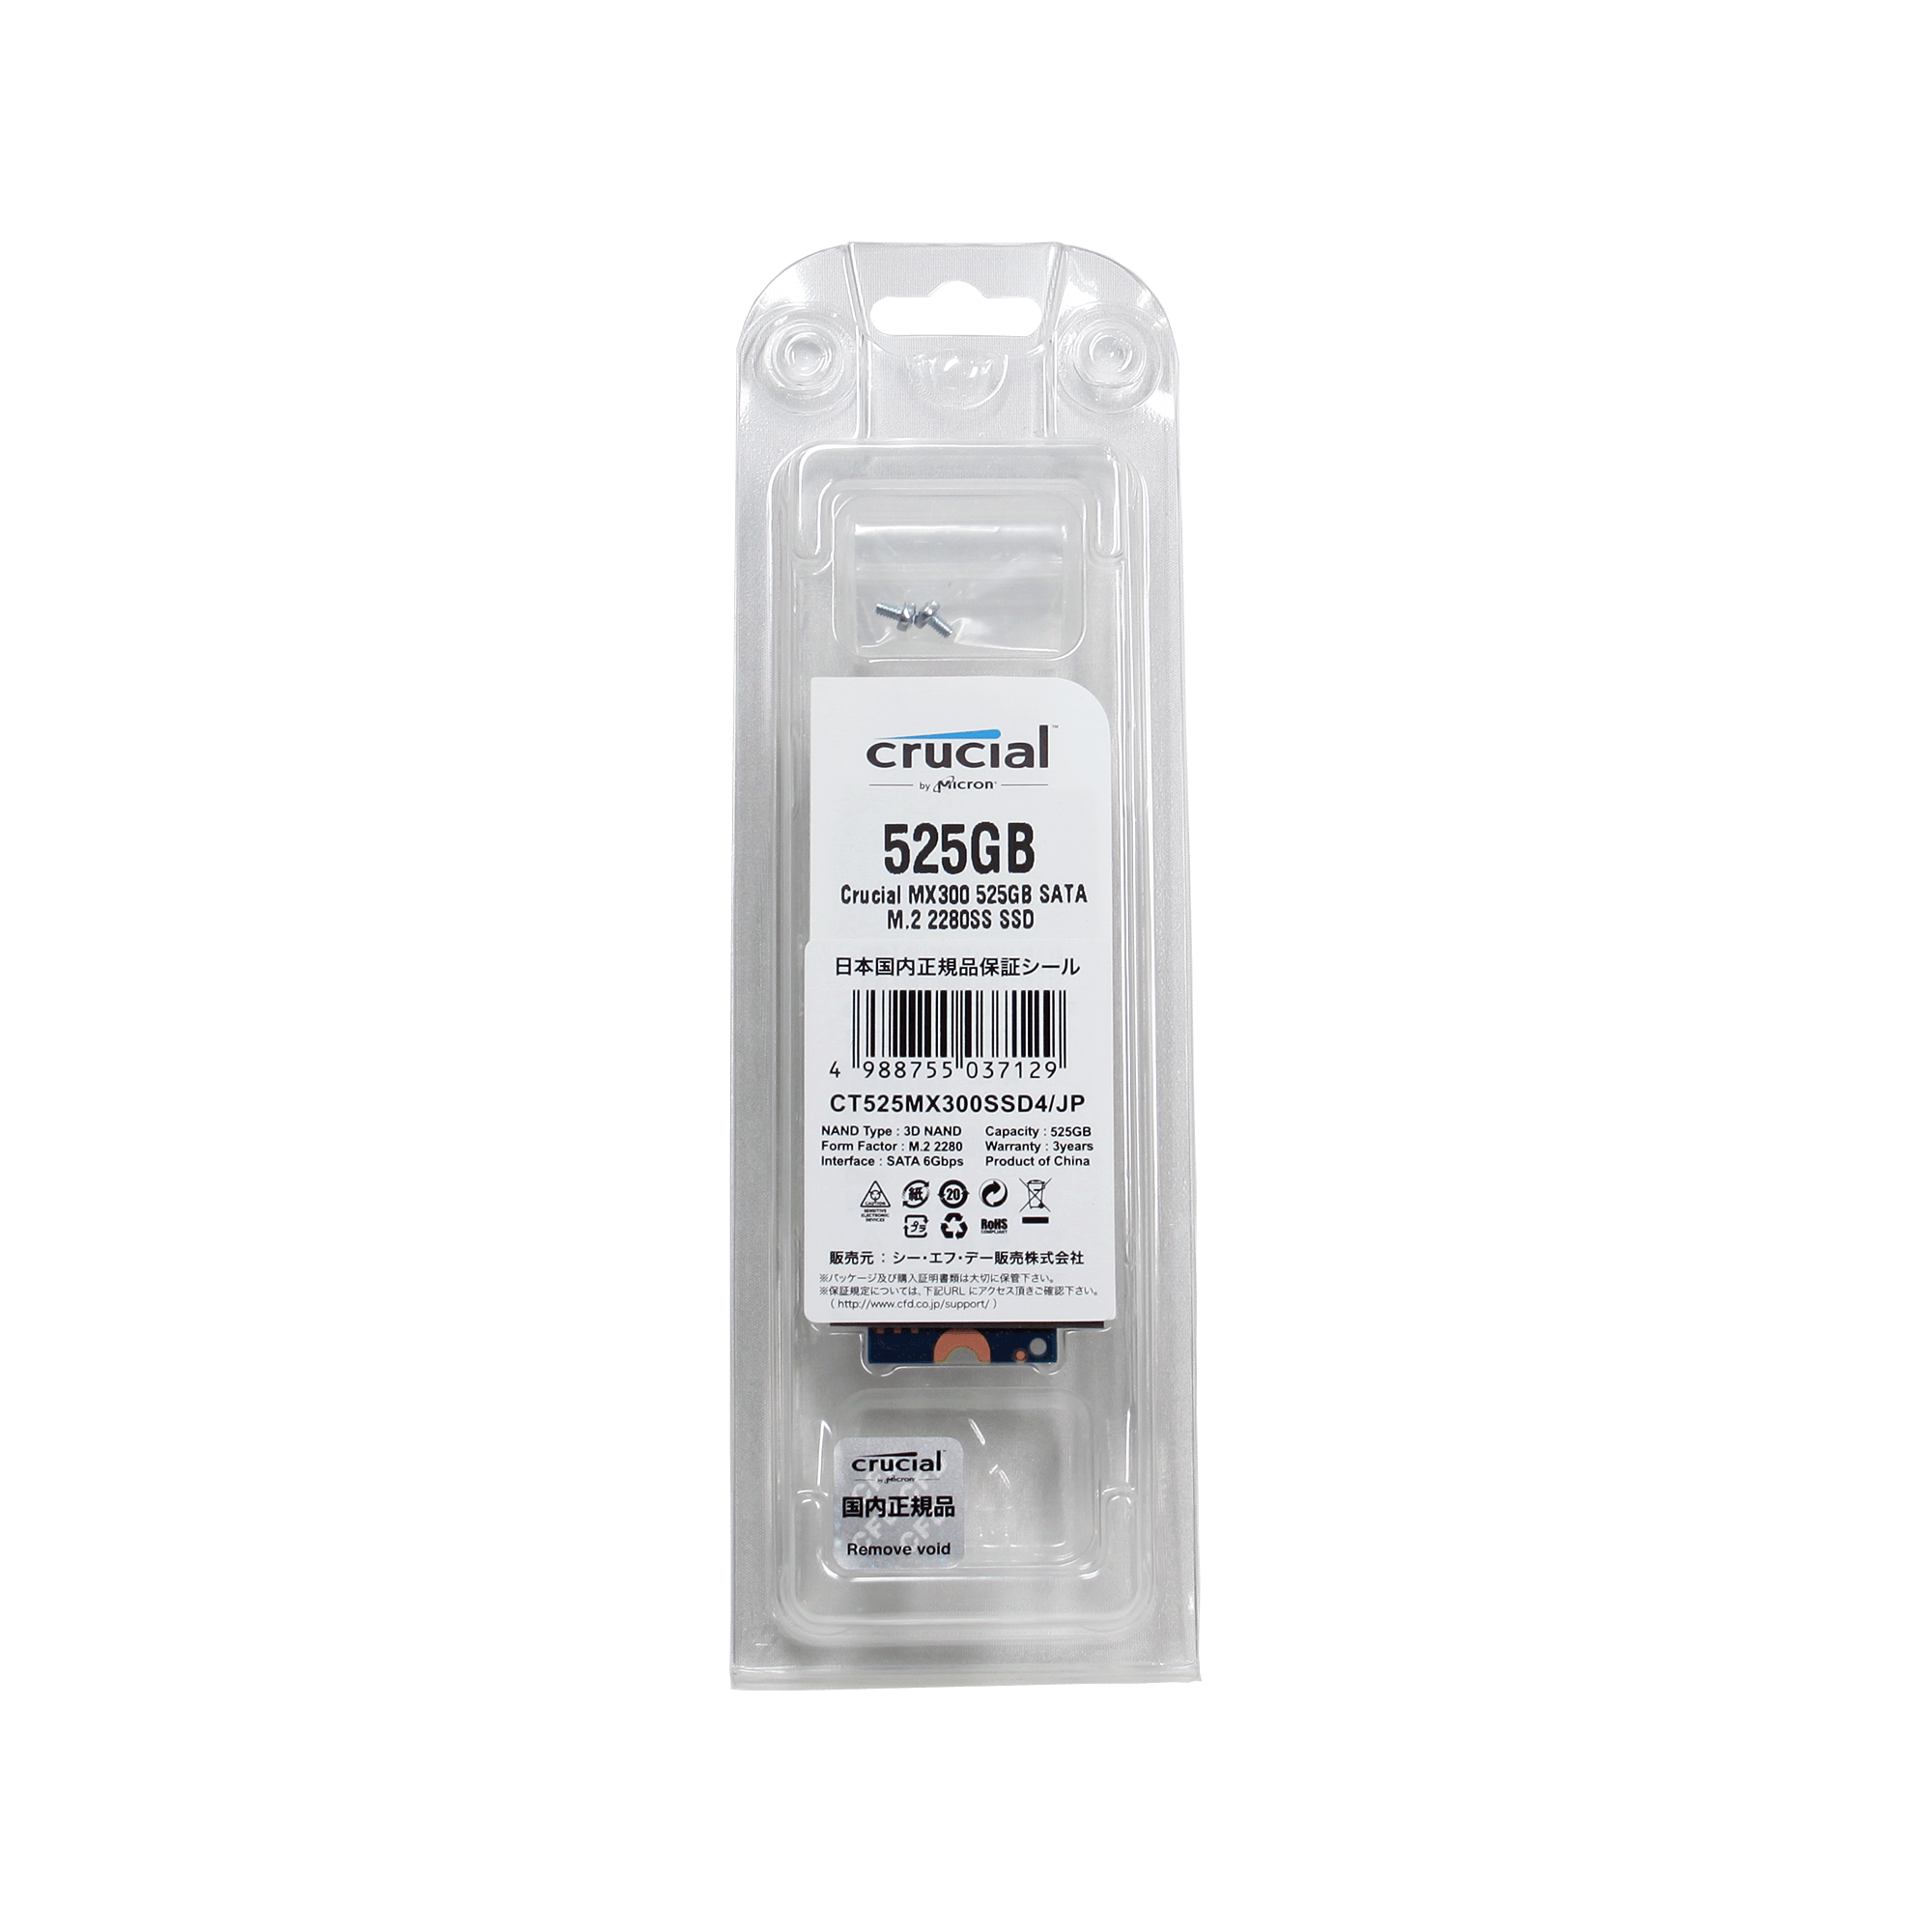 CT525MX300SSD4/JP | Crucial MX300 シリーズ M.2 SSD (525GB) | CFD ...